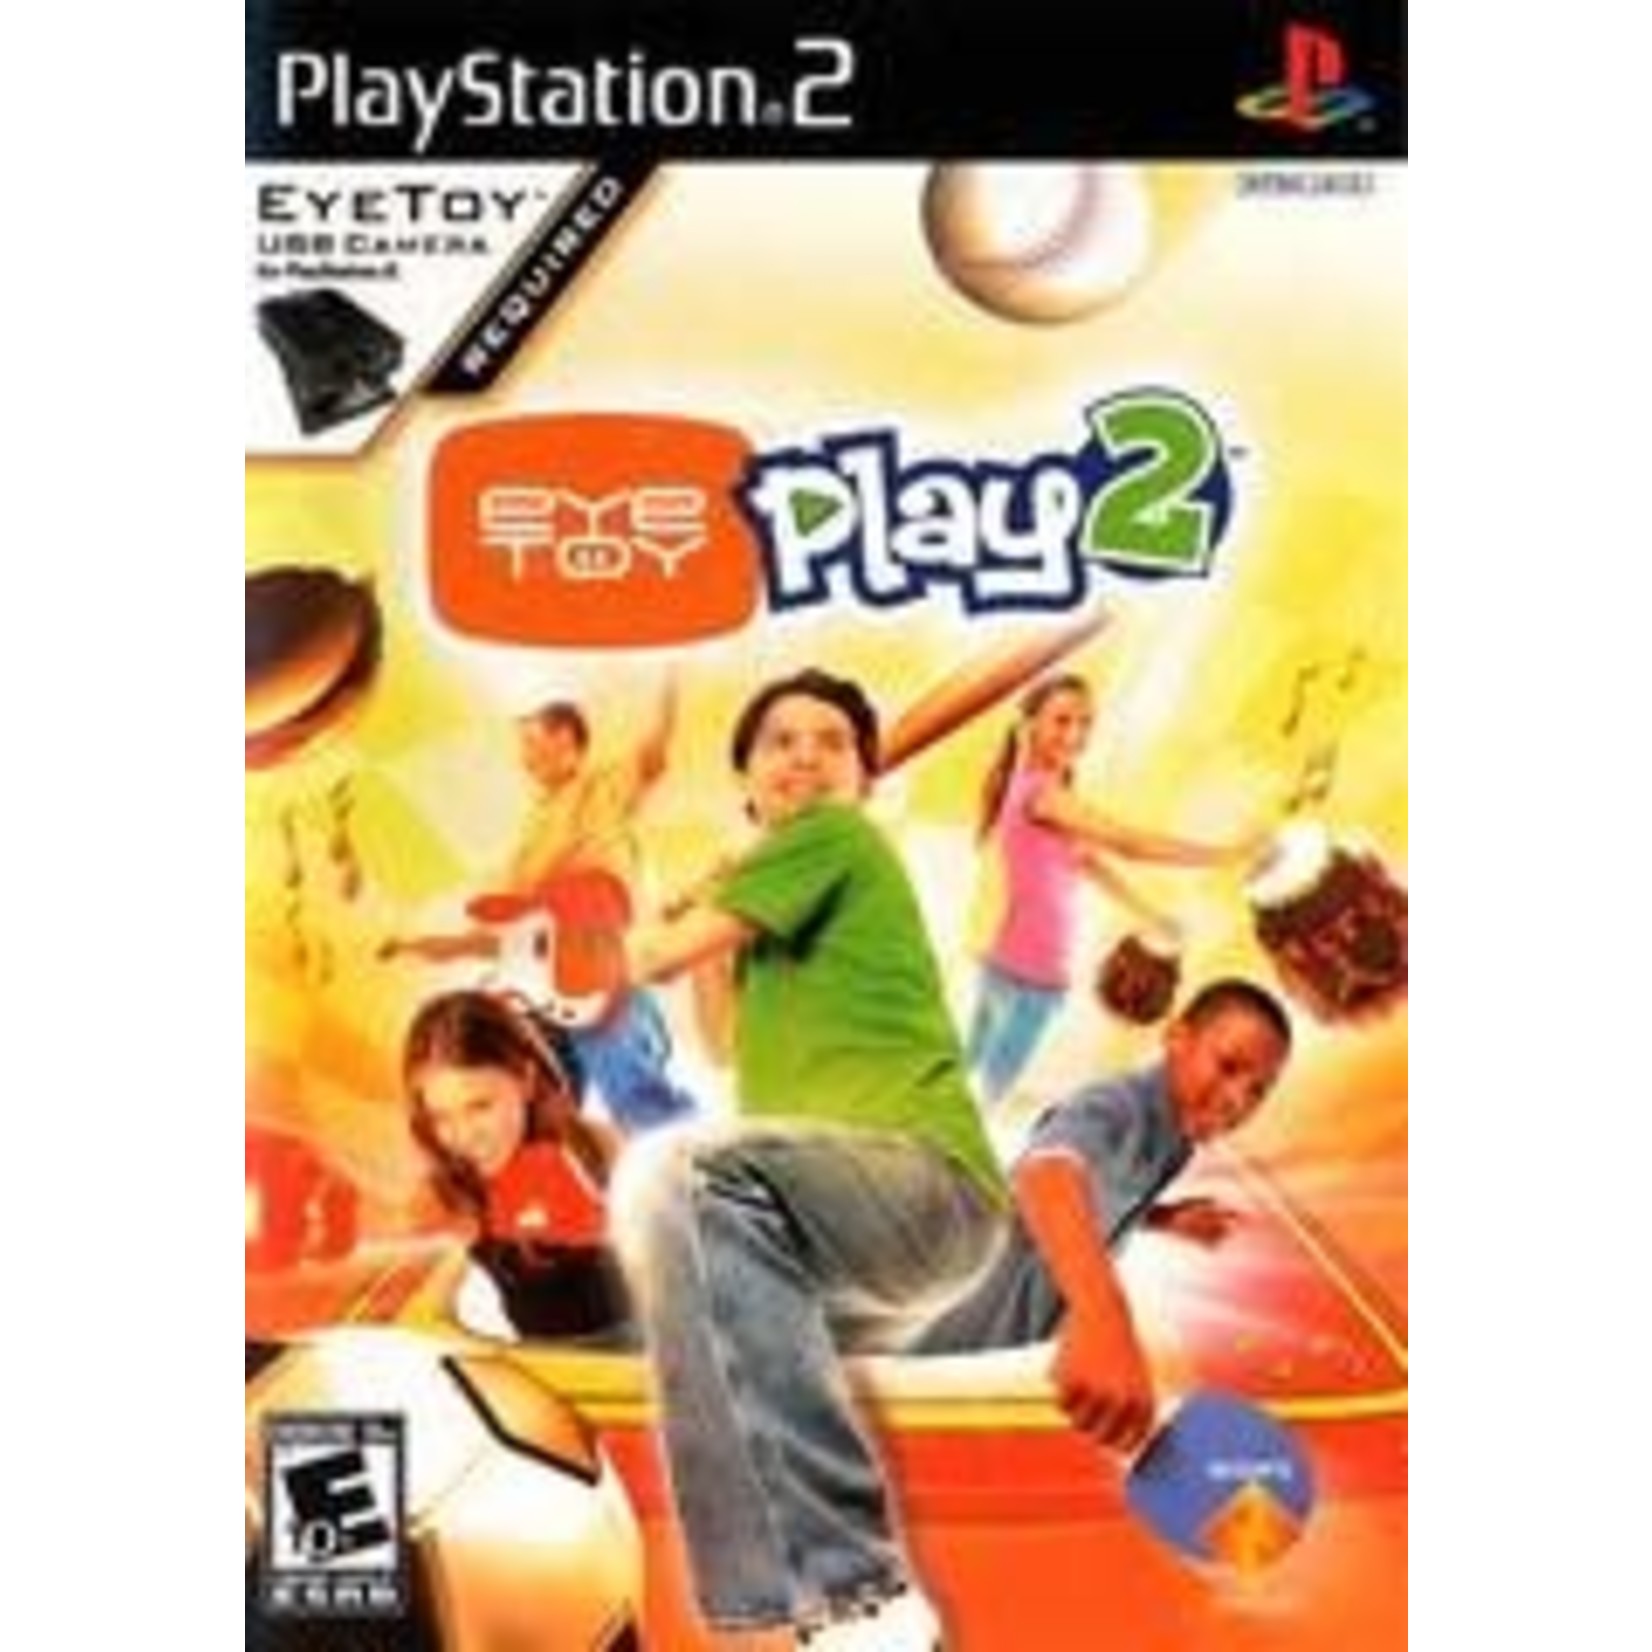 Playstation Eye Toy Play 2 [Playstation 2]